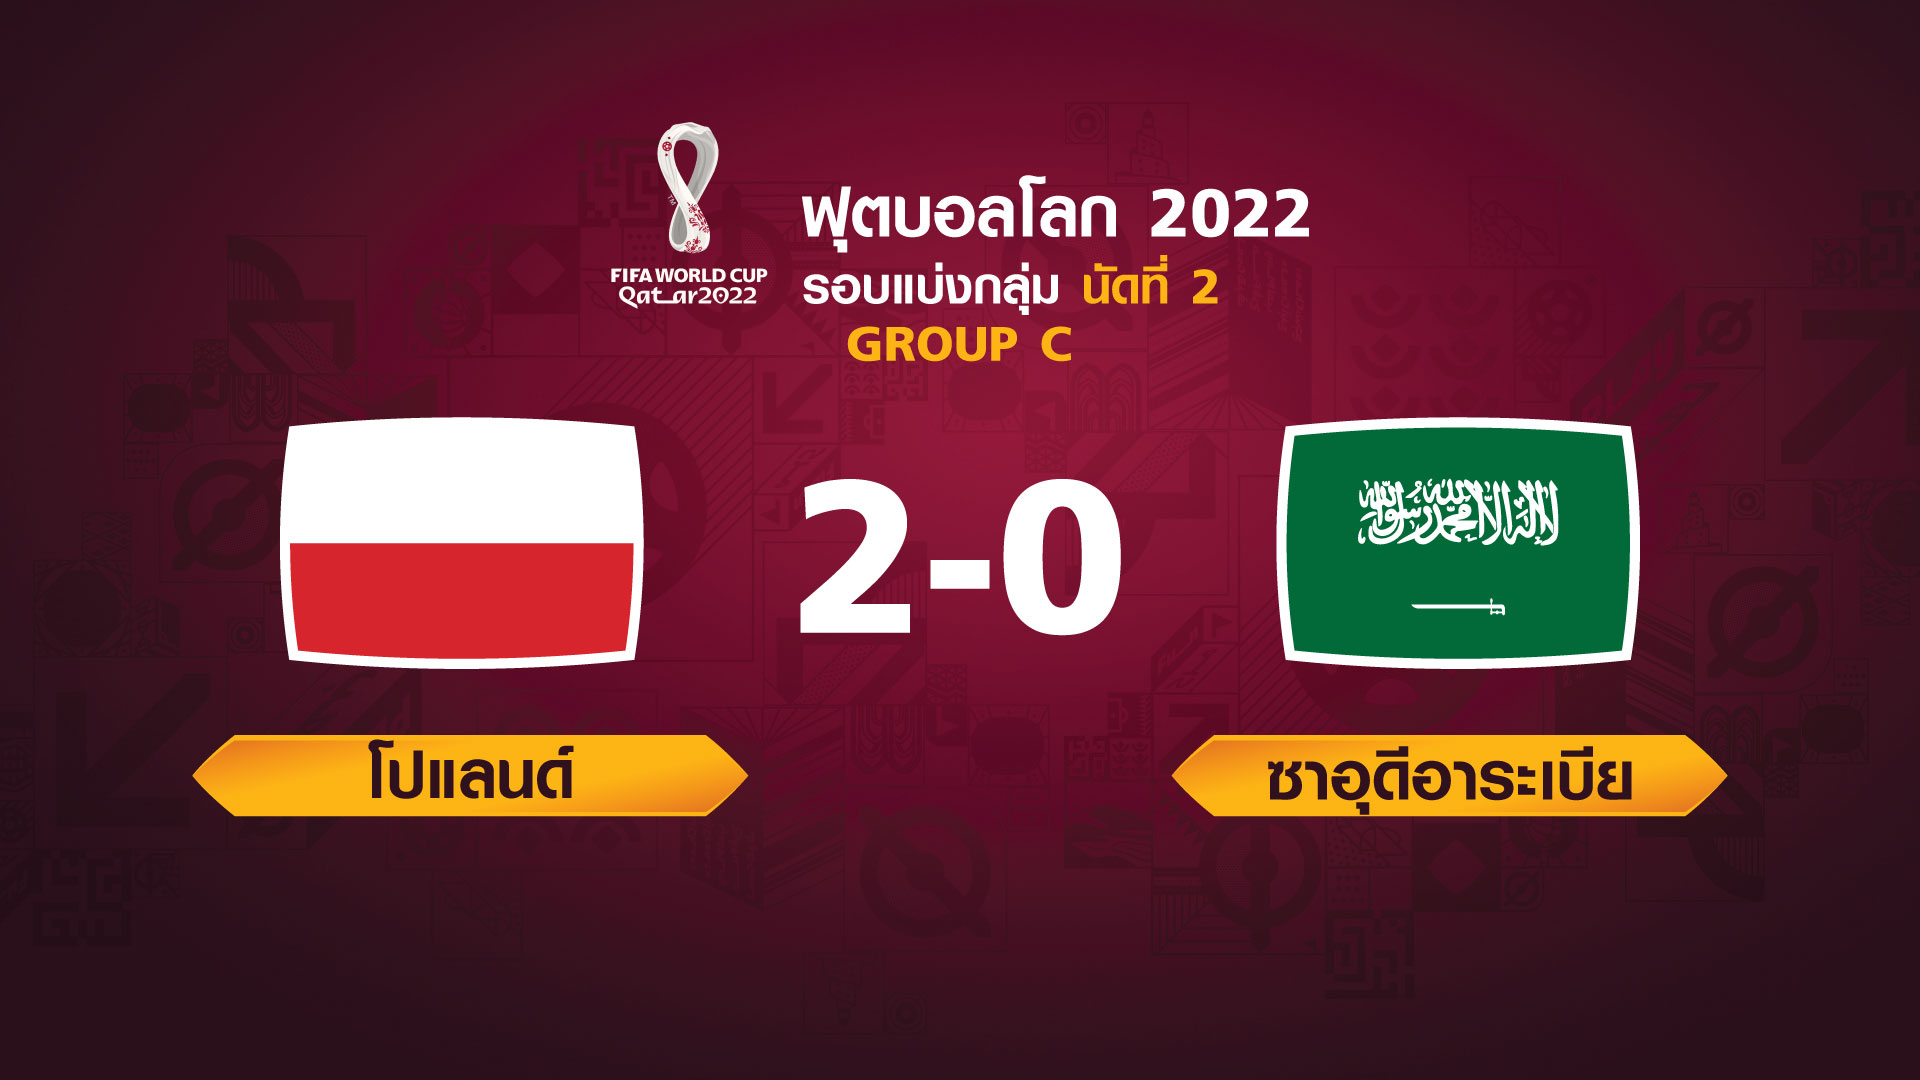 ฟุตบอลโลก 2022 รอบแบ่งกลุ่ม นัดที่ 2 ระหว่าง Poland vs Saudi Arabia